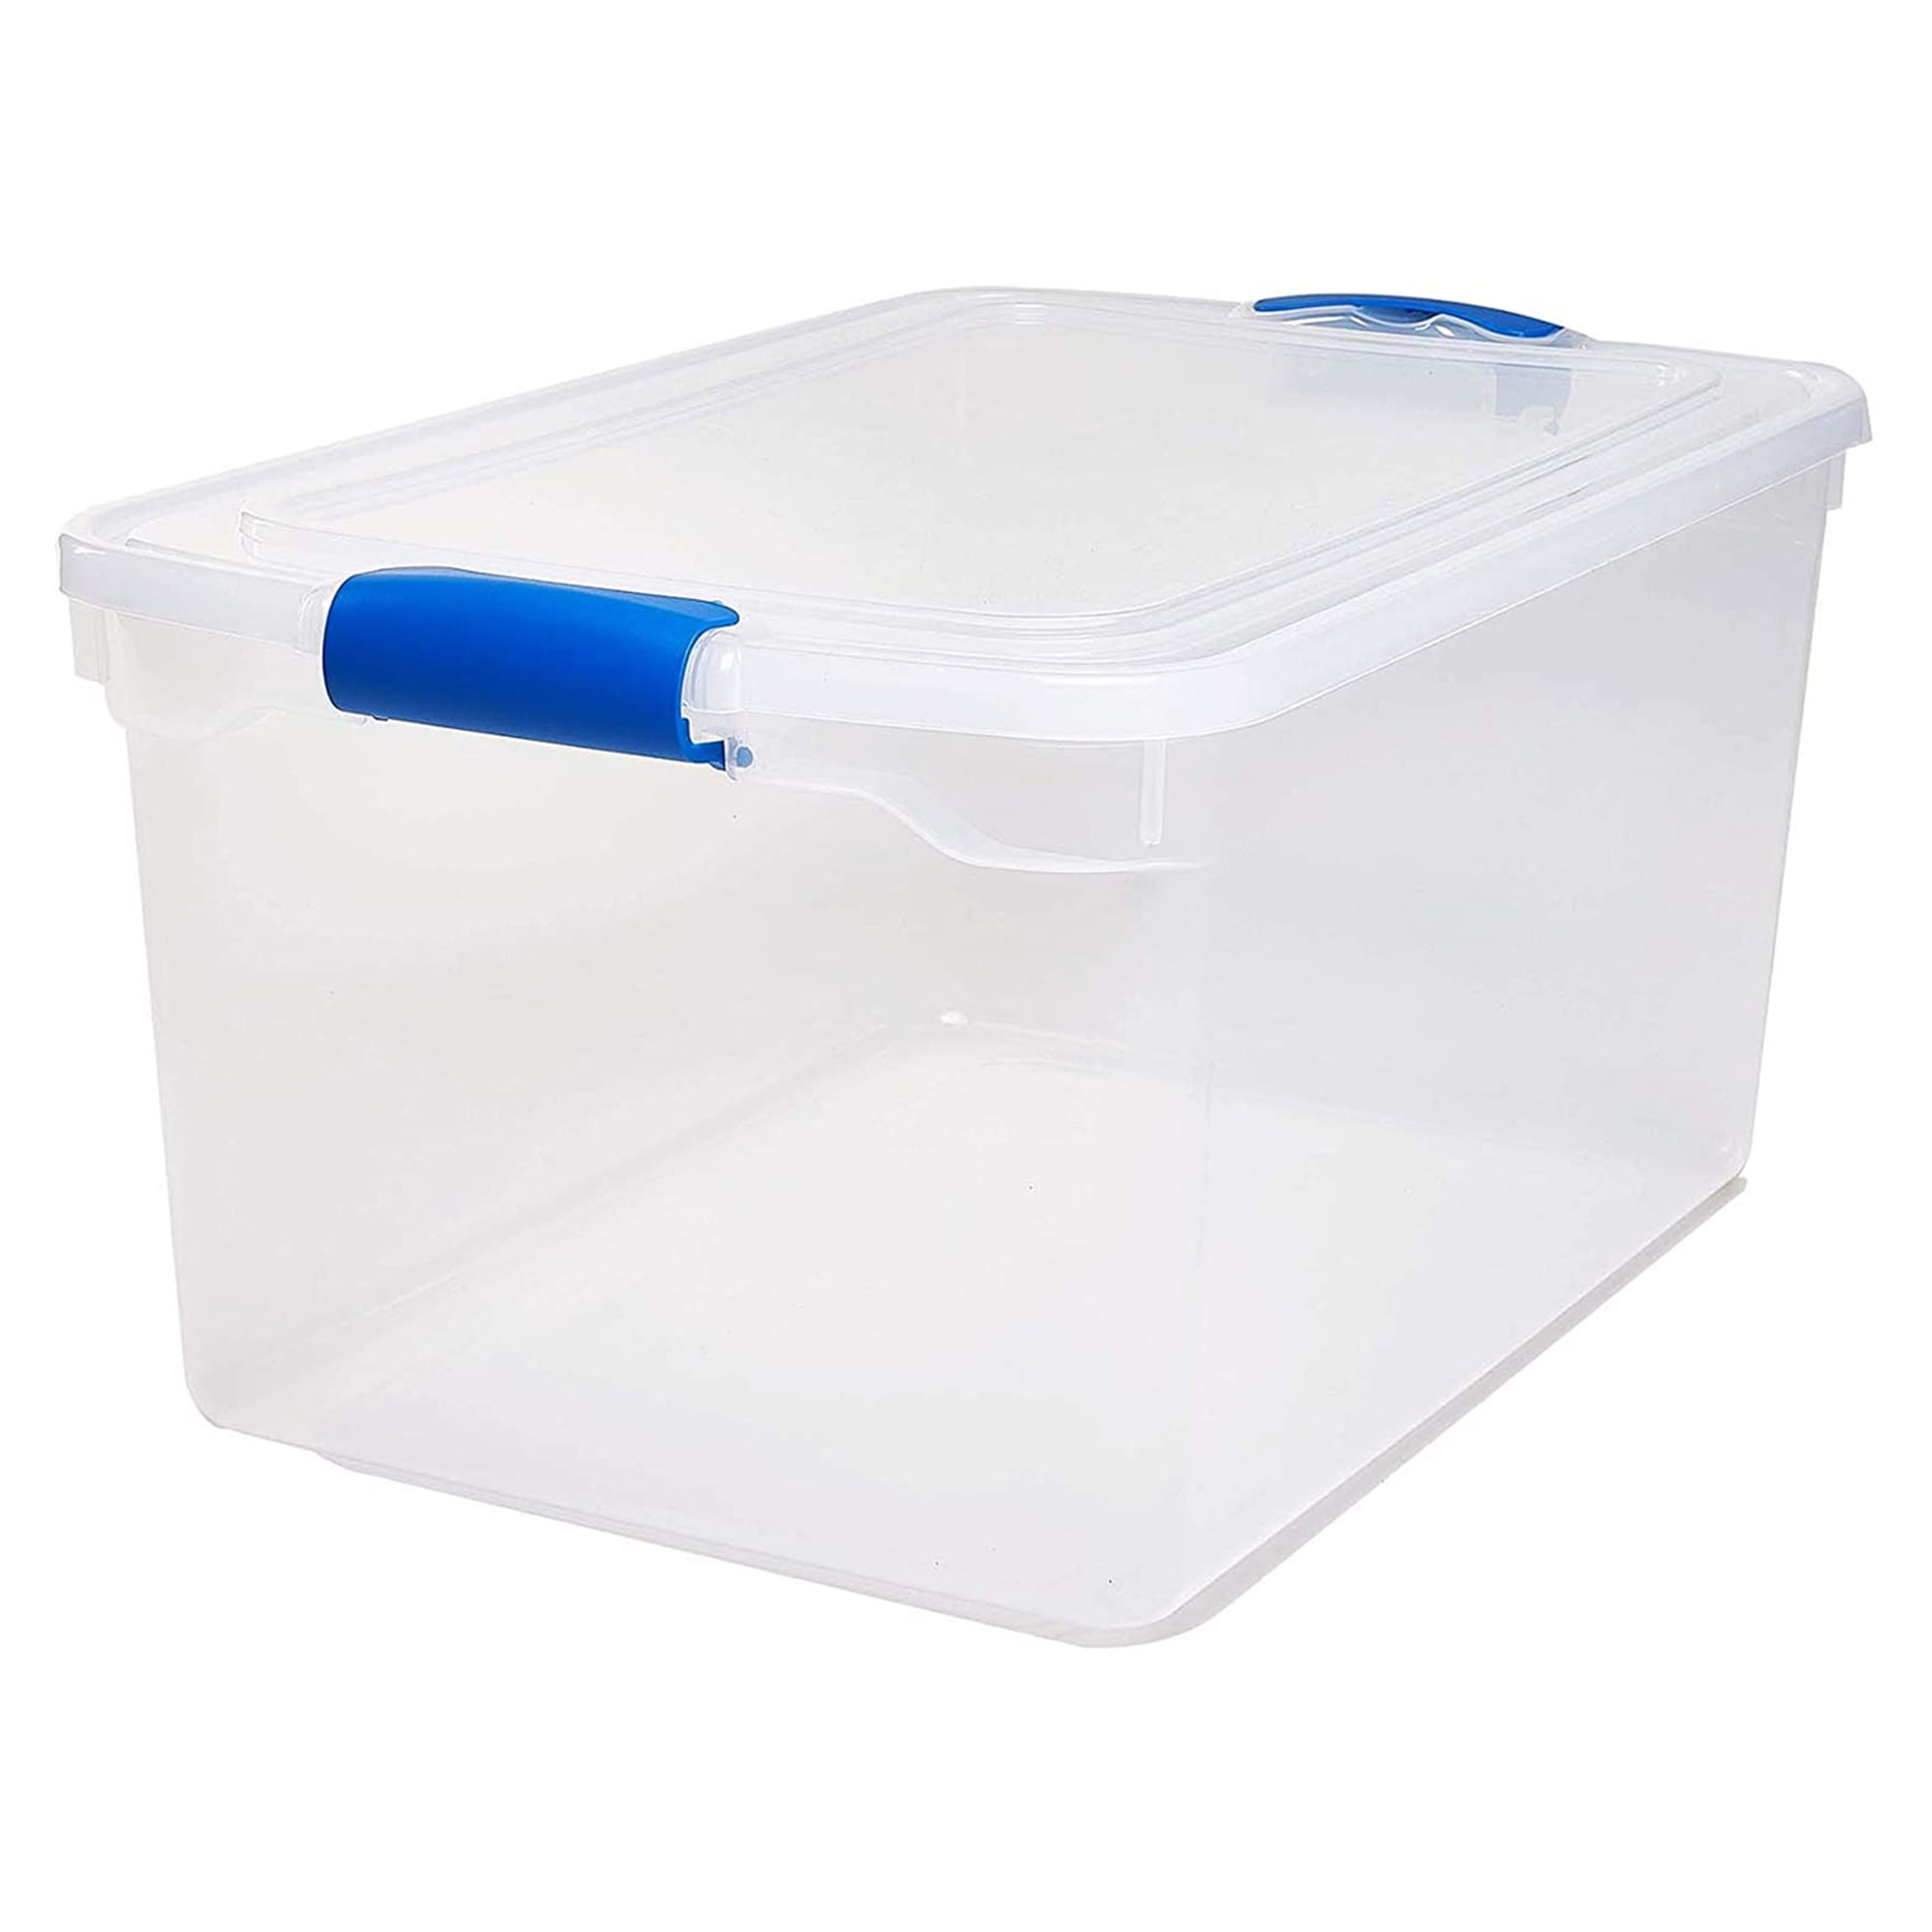 Homz 66-Qt Plastic Storage Boxes, Clear/Blue (Set of 2) - 1